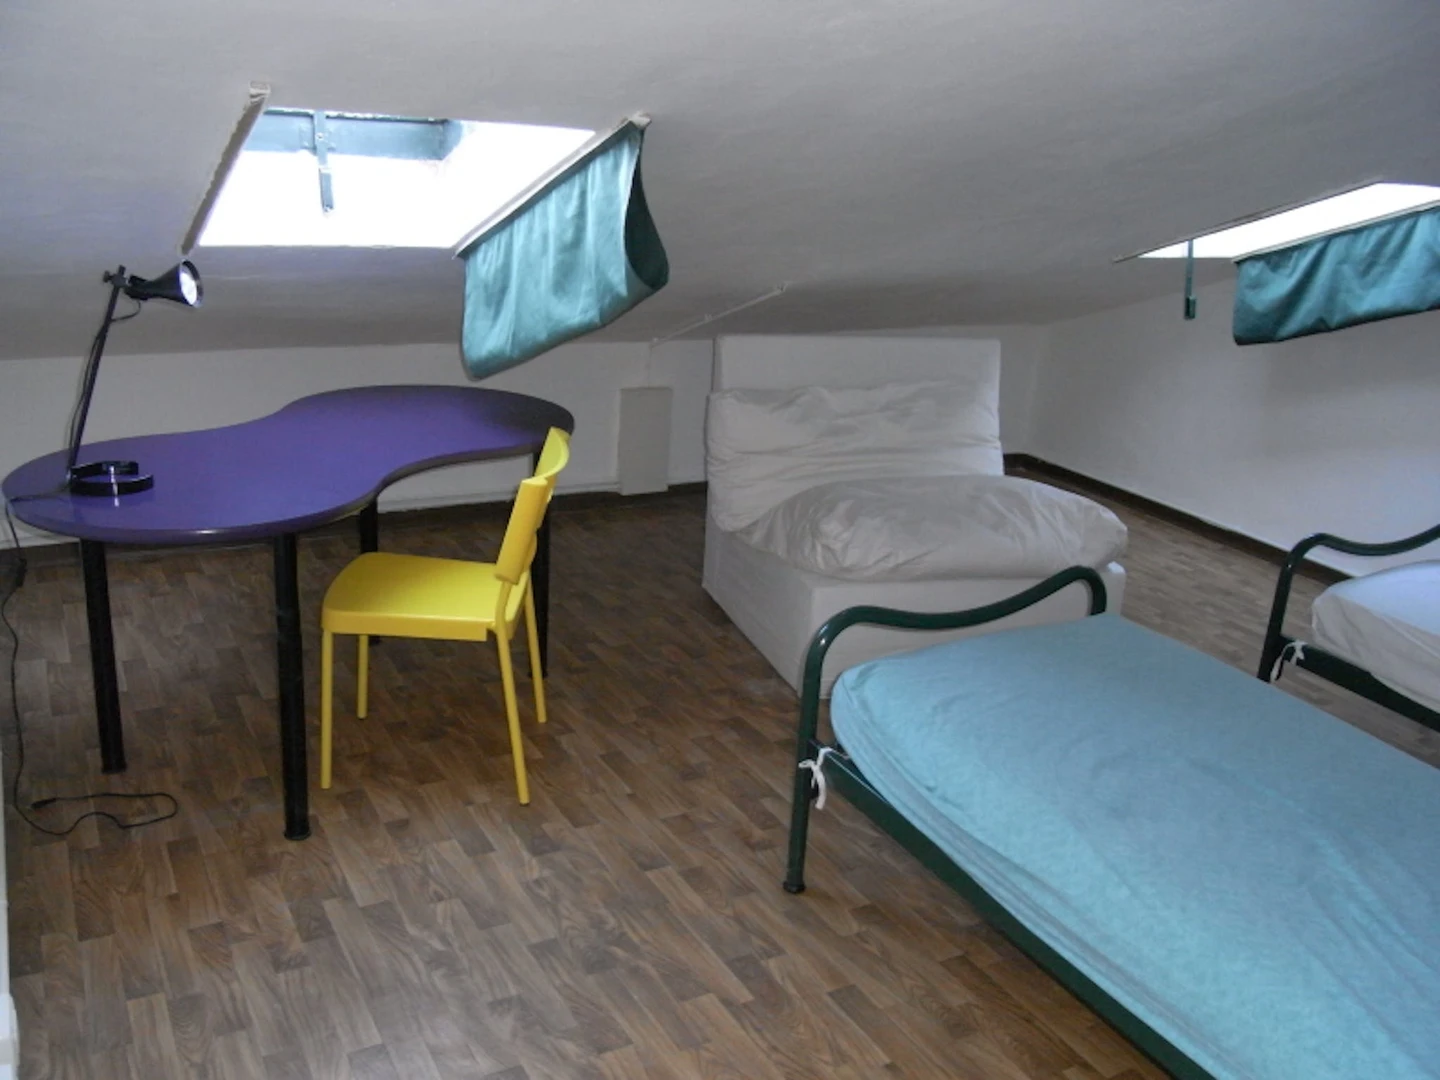 Pokój do wynajęcia z podwójnym łóżkiem w Parma